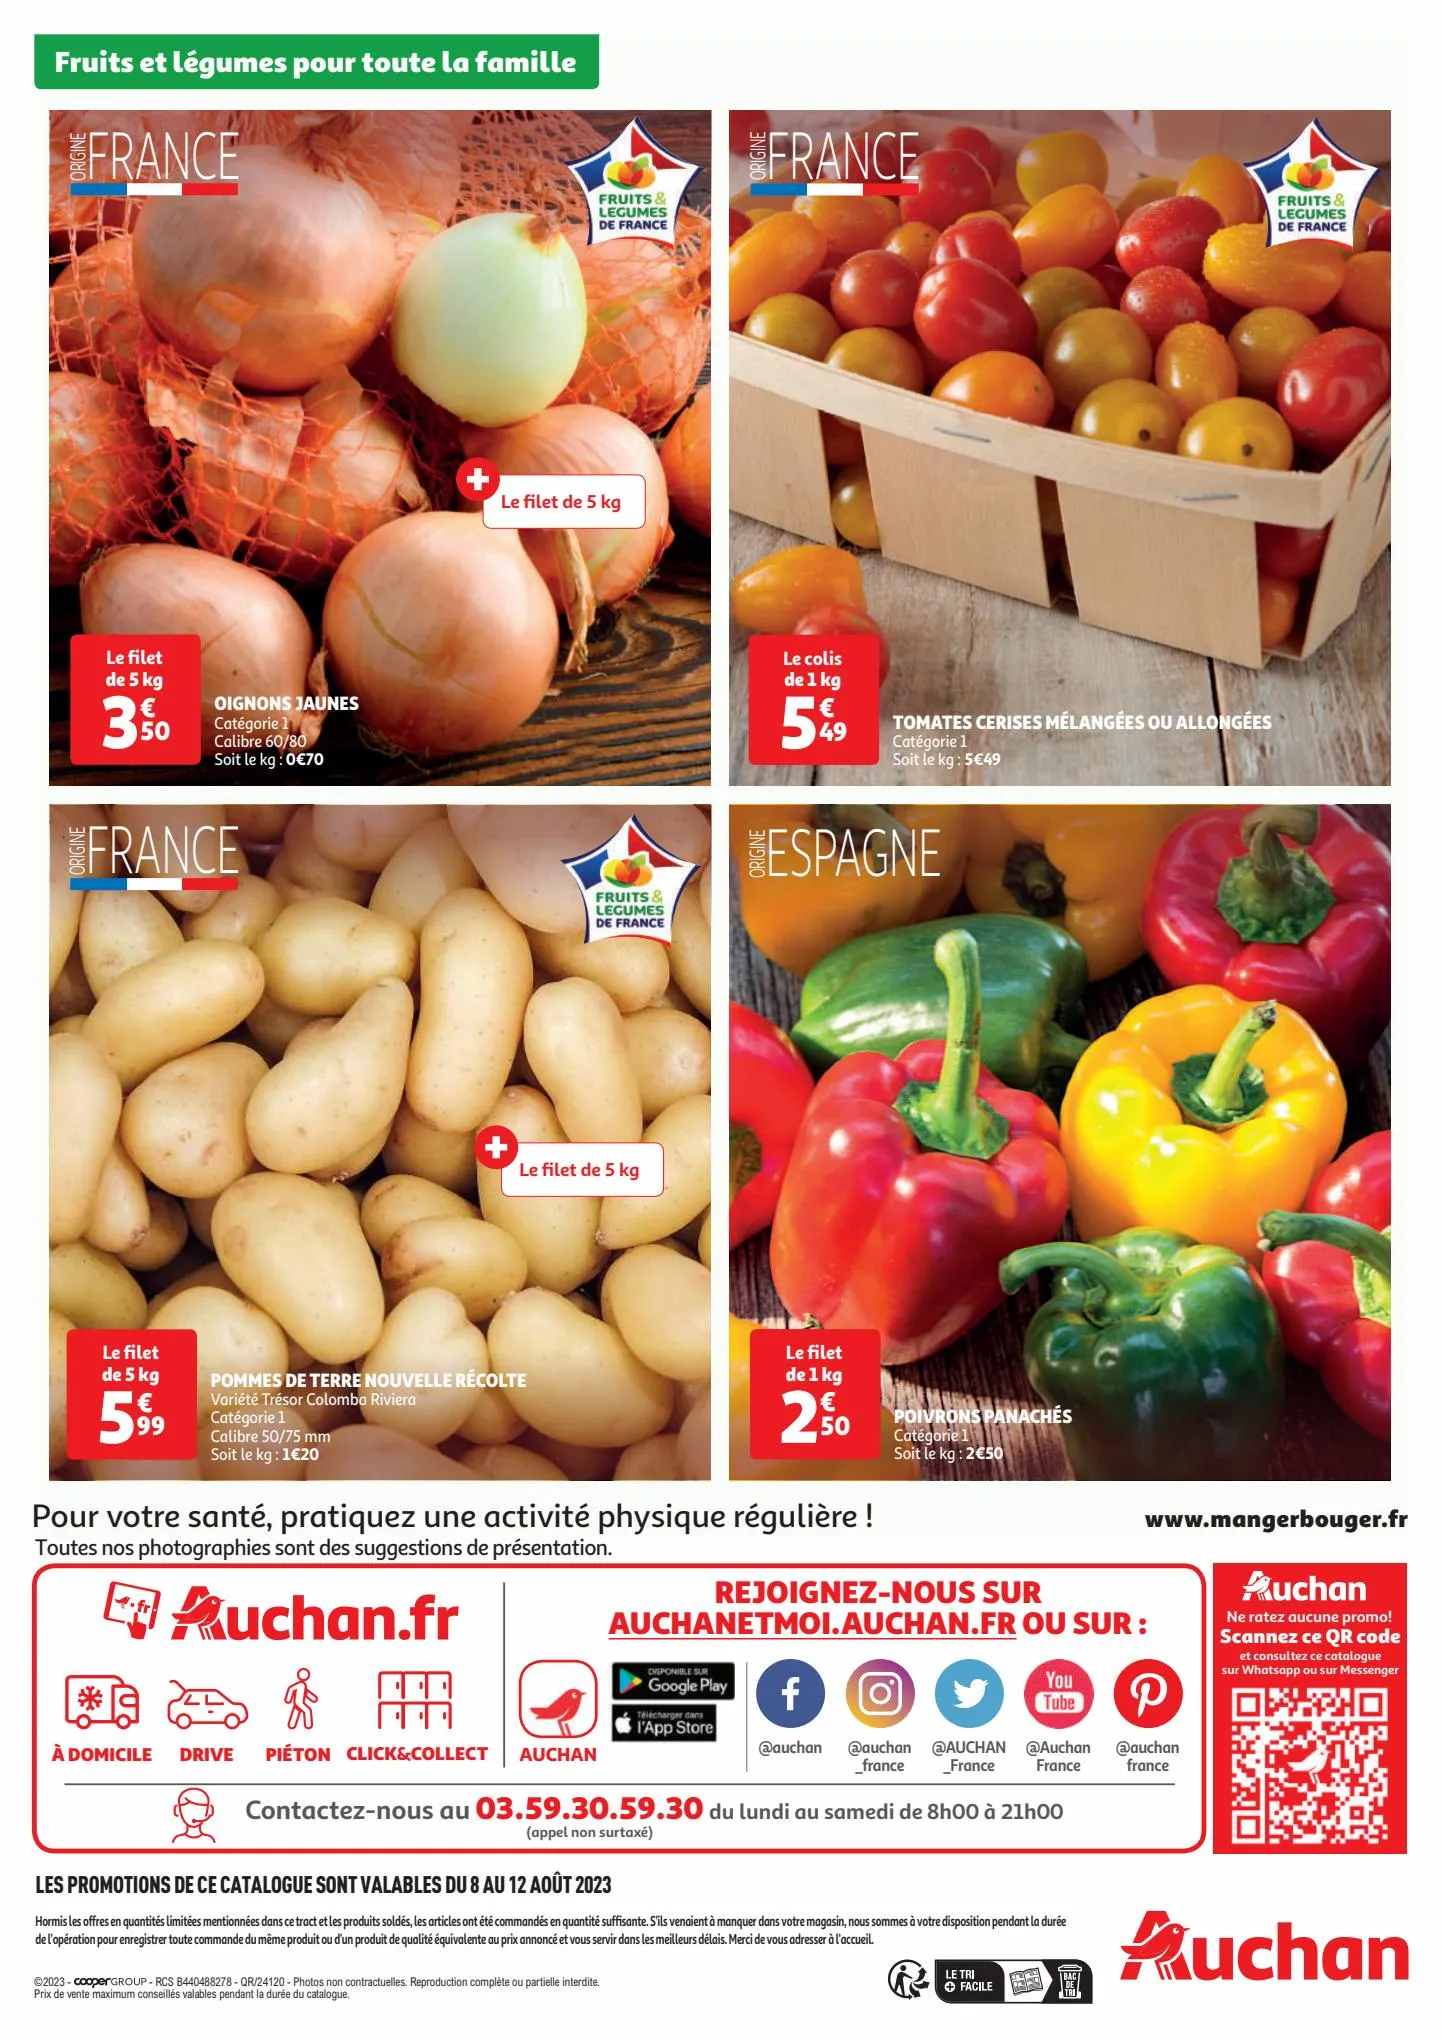 Catalogue Fruits et légumes pour toute la famille., page 00003